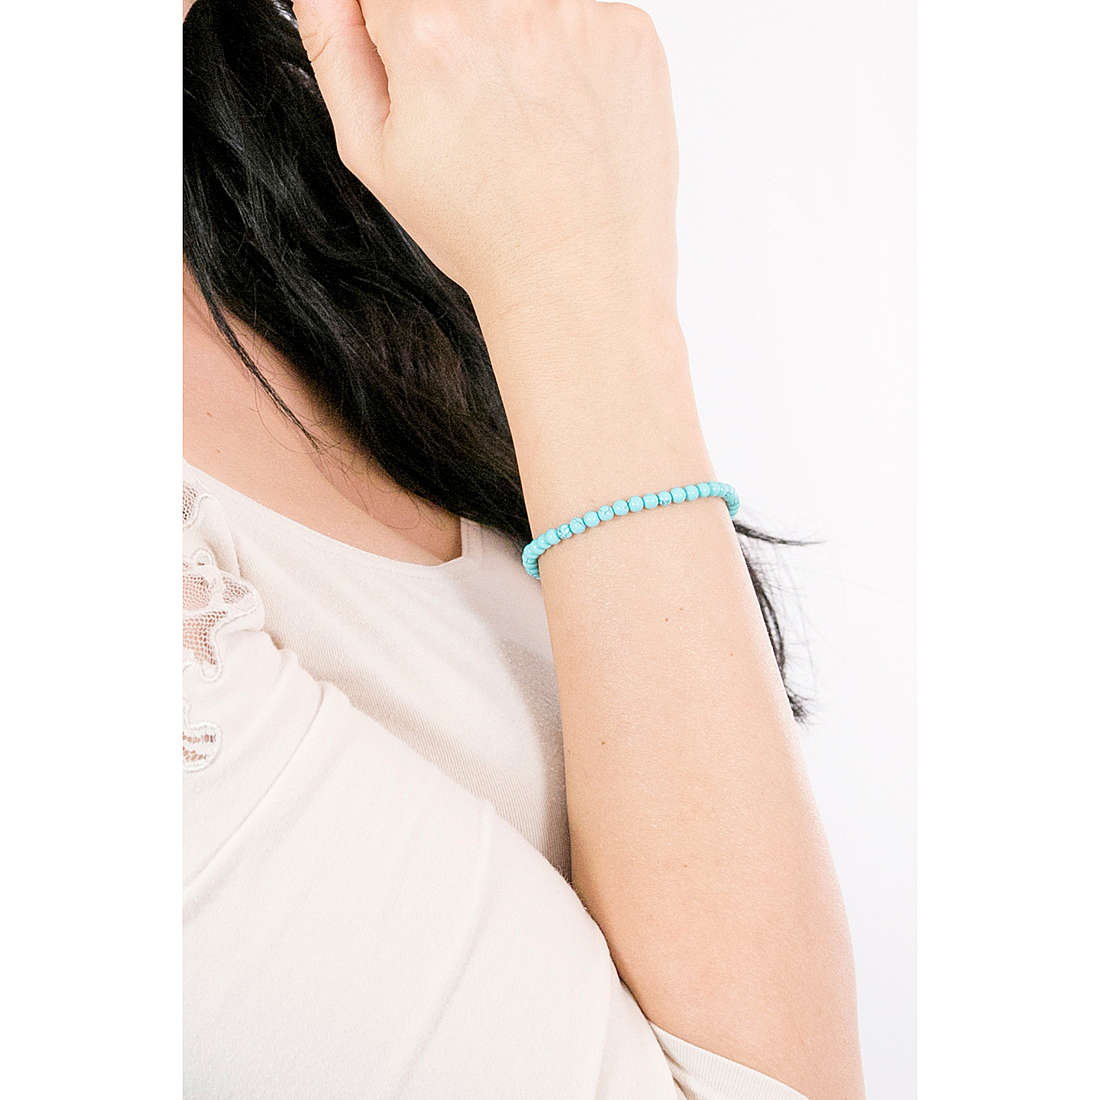 TI SENTO MILANO bracelets woman 2908TQ wearing